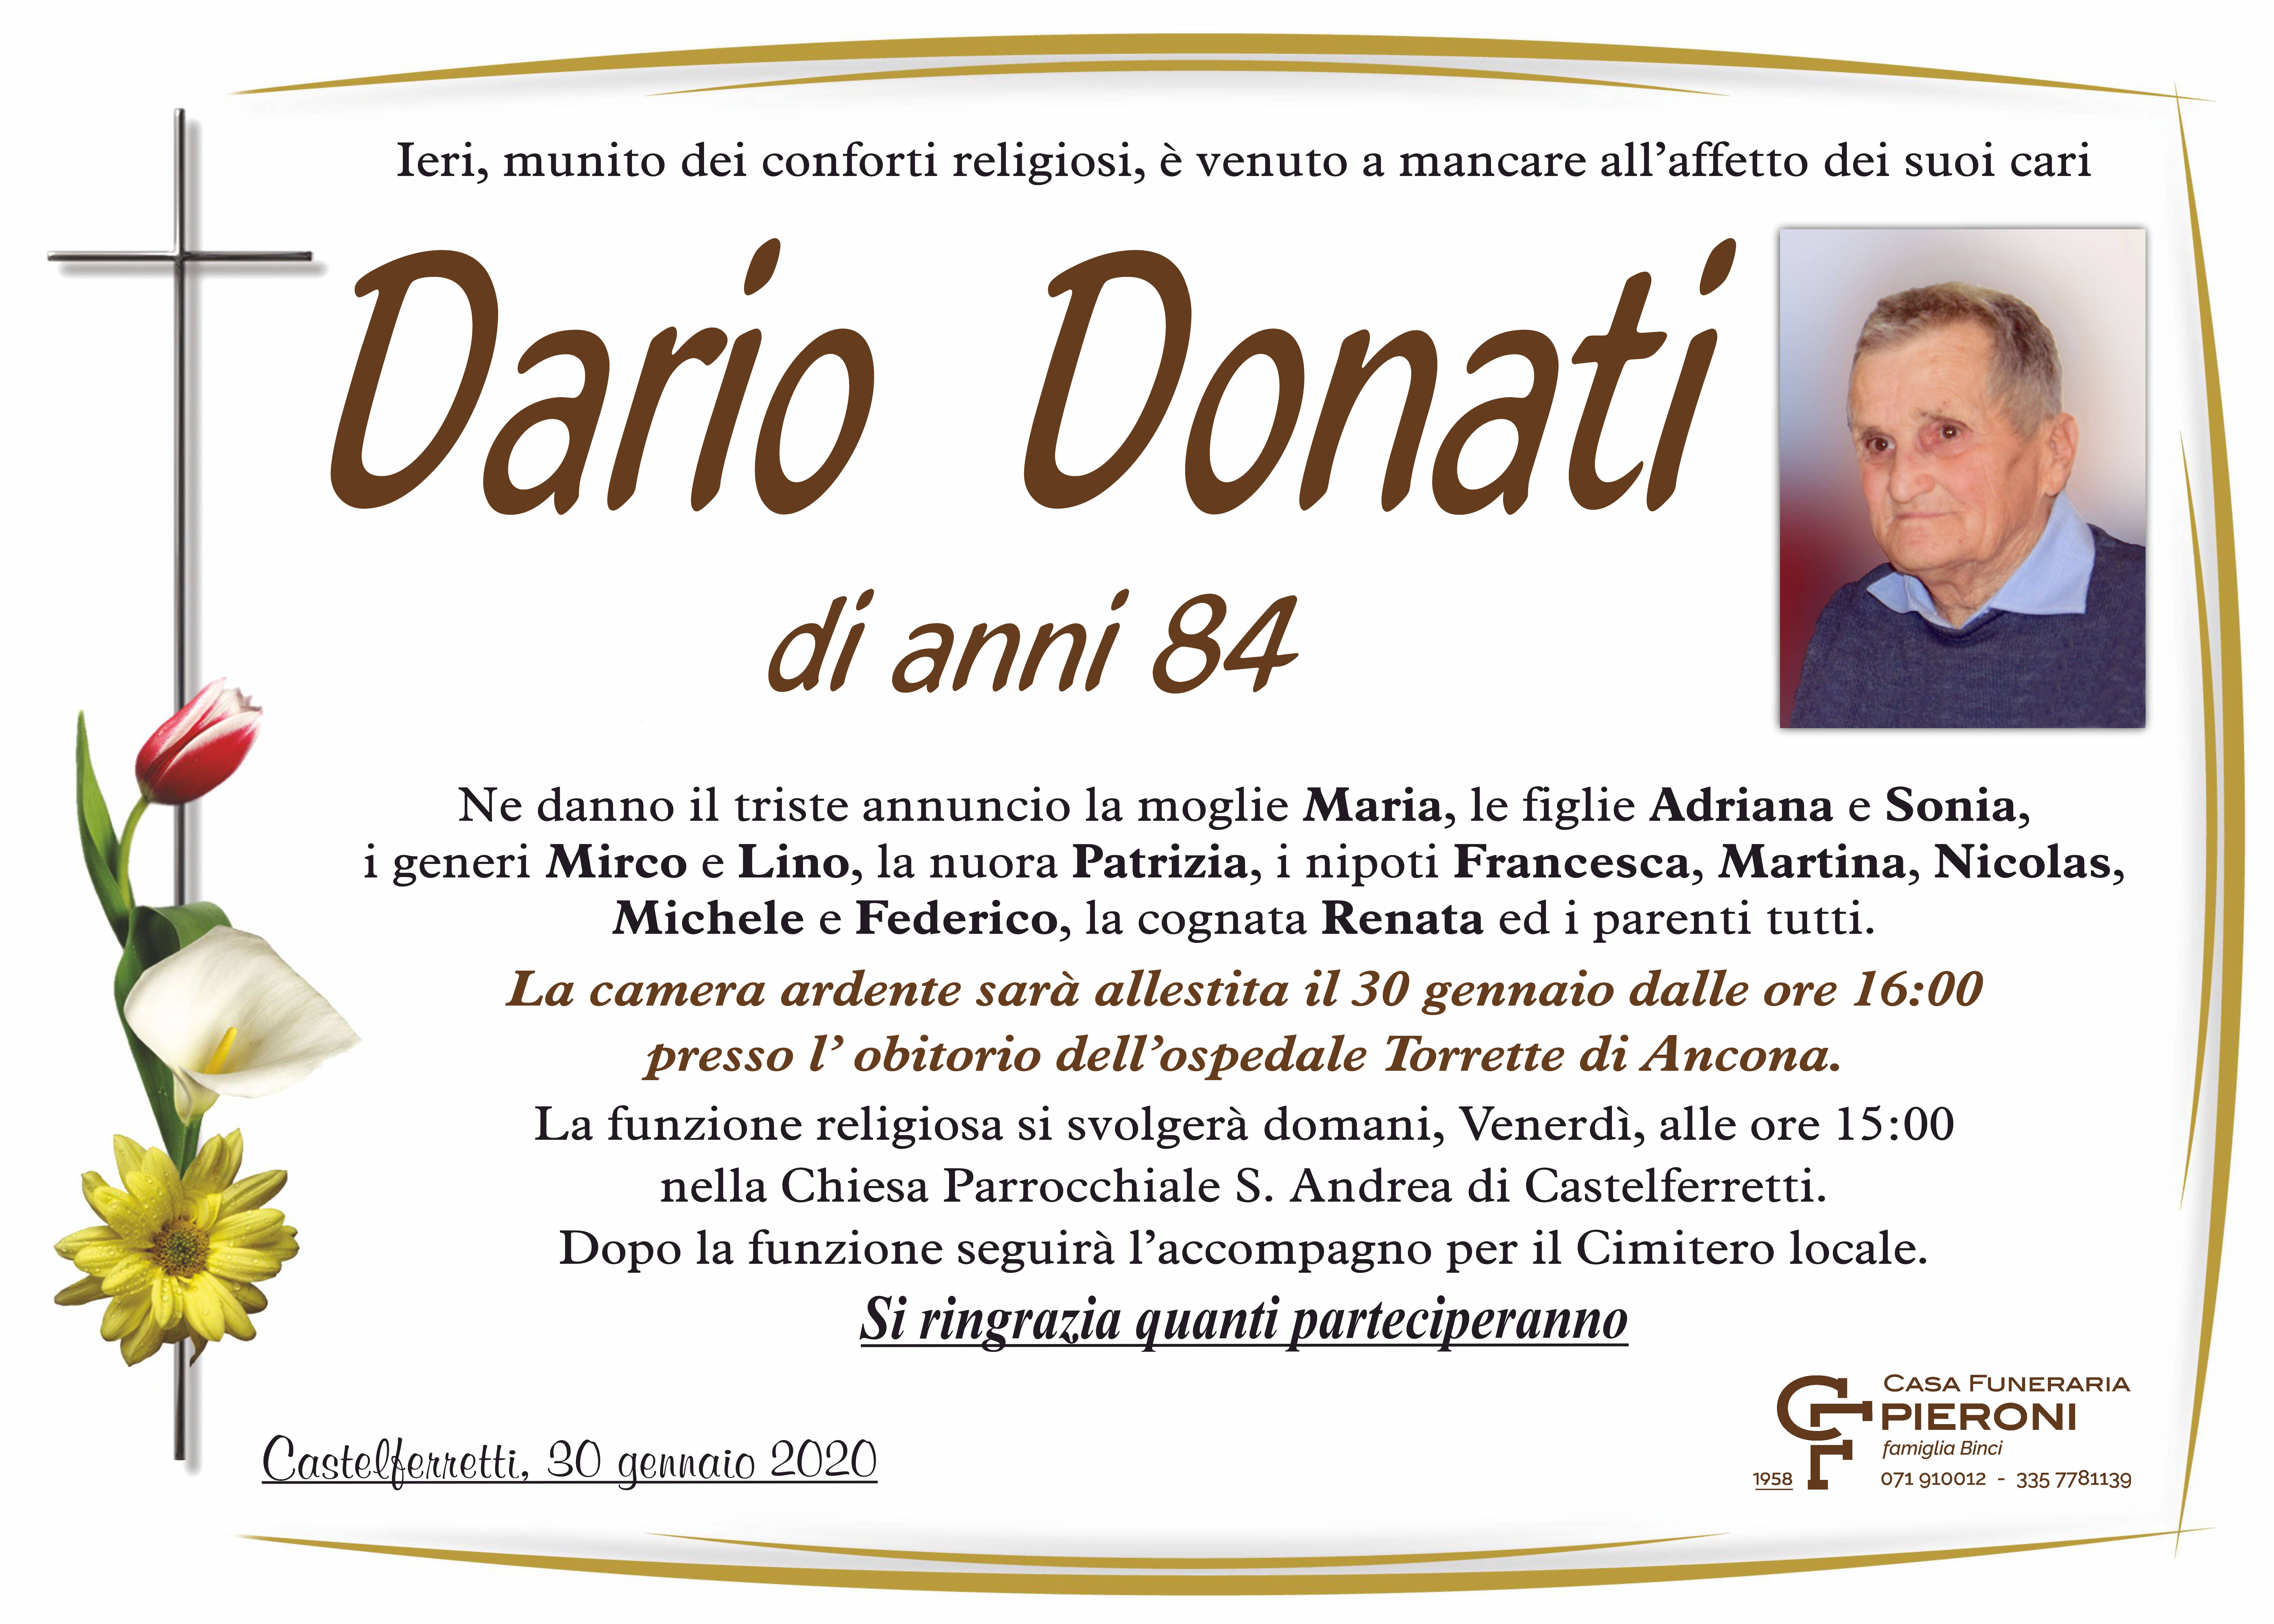 Dario Donati